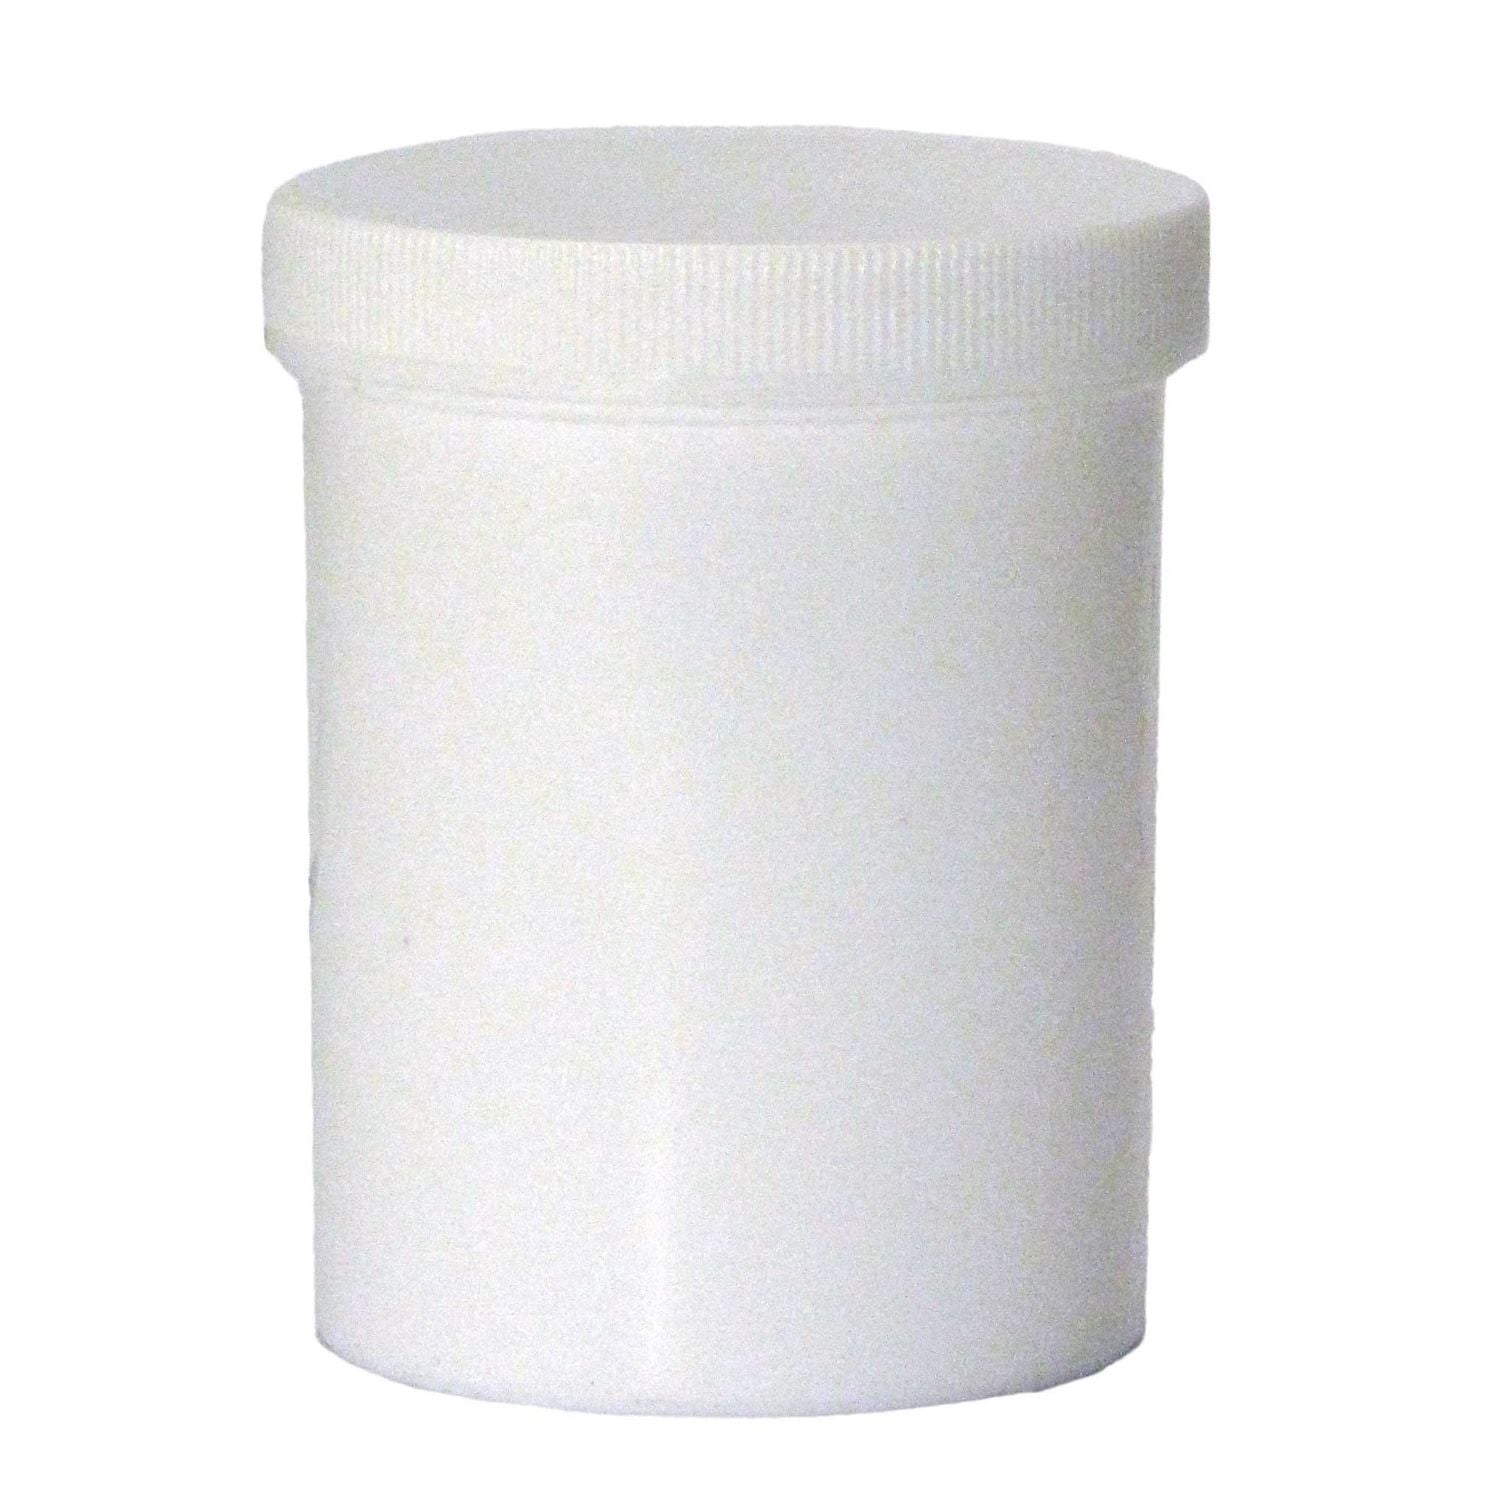 Alvita Plastic Jar & Cap | 100g | Pack of 12